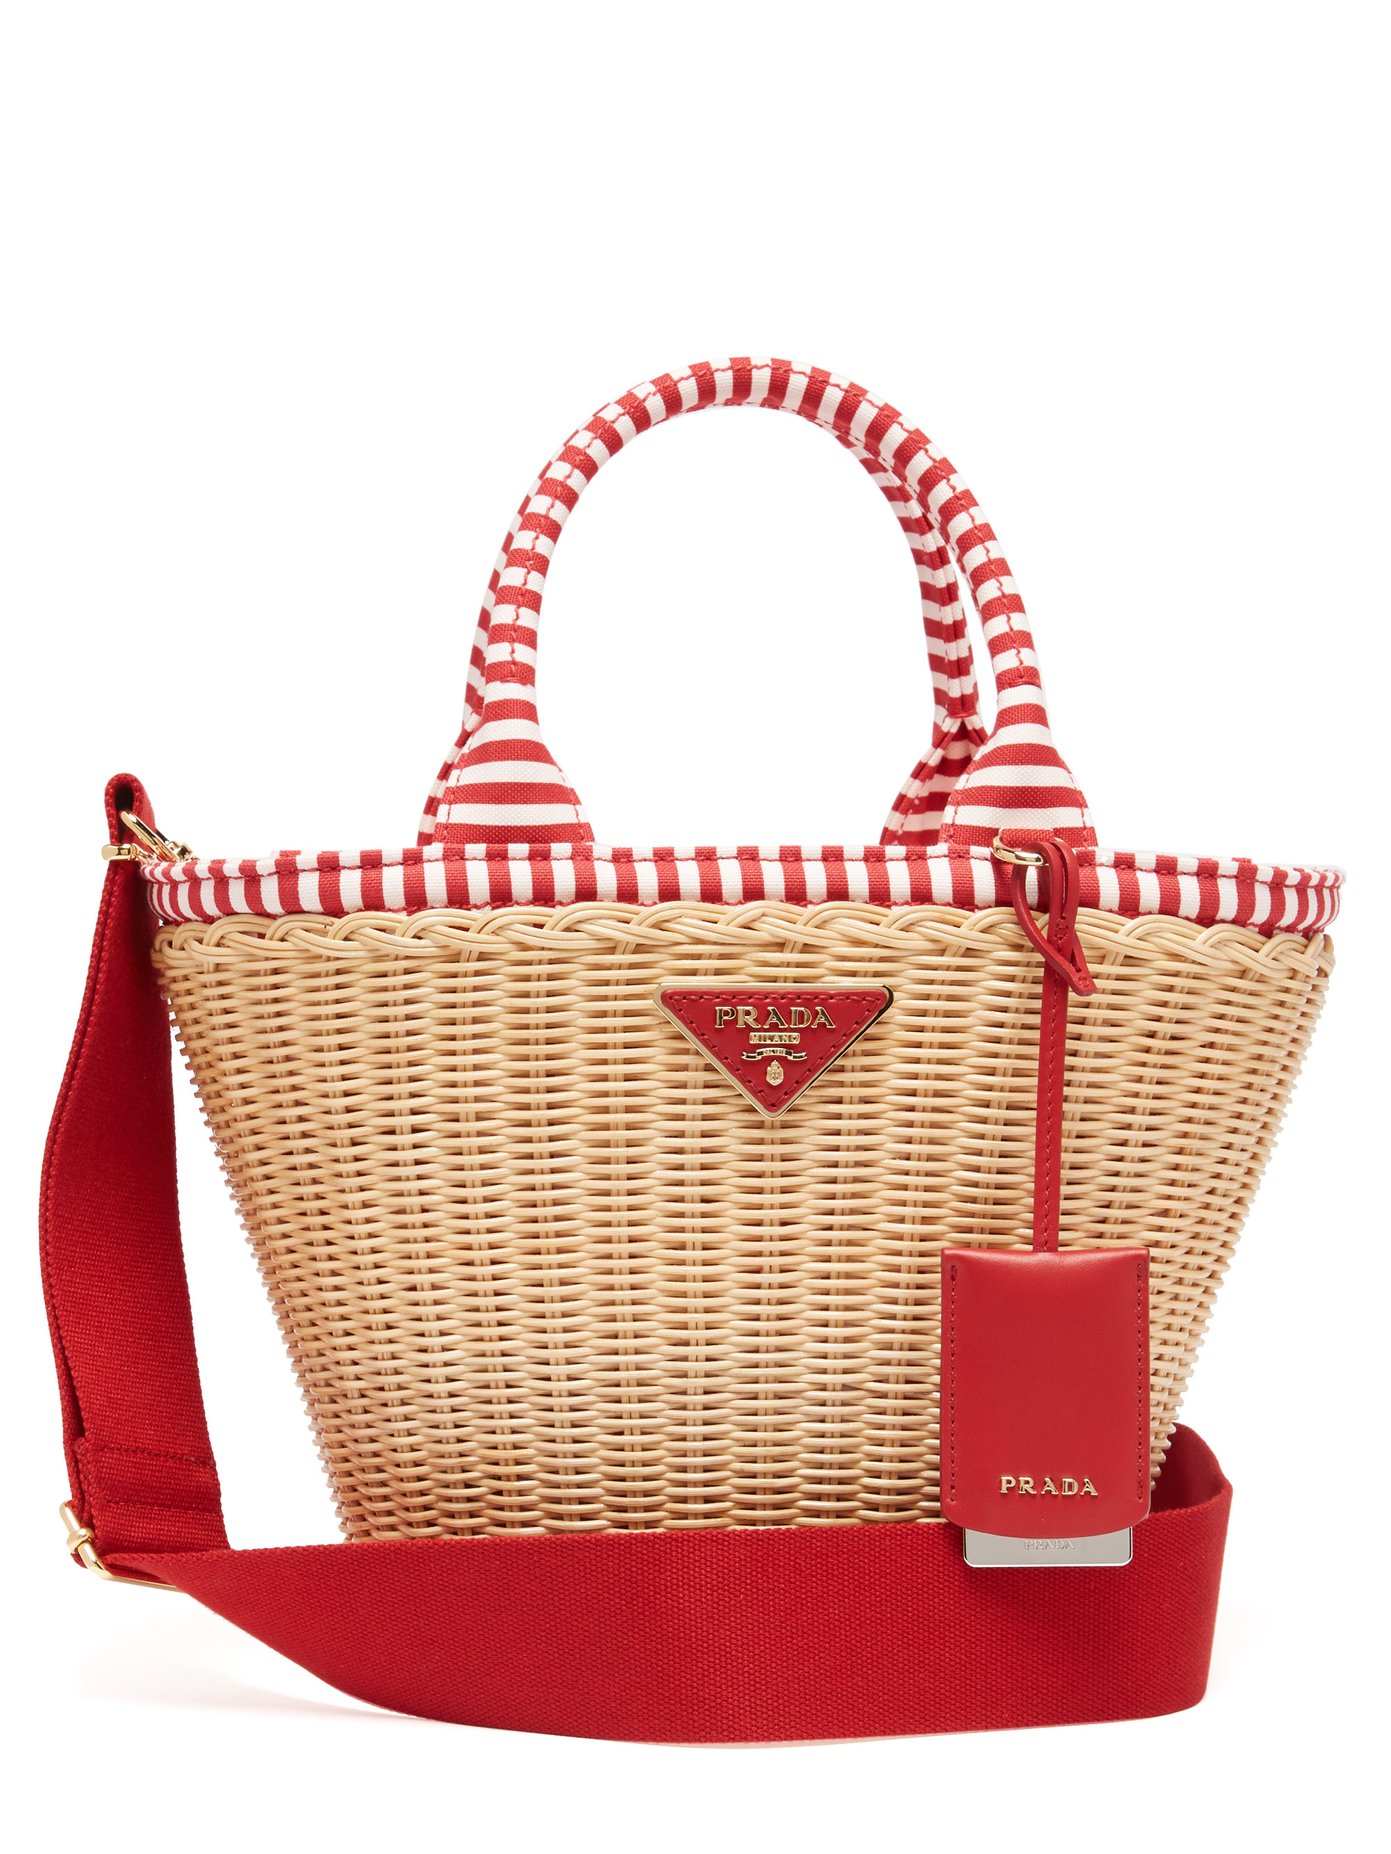 prada wicker and canvas basket bag